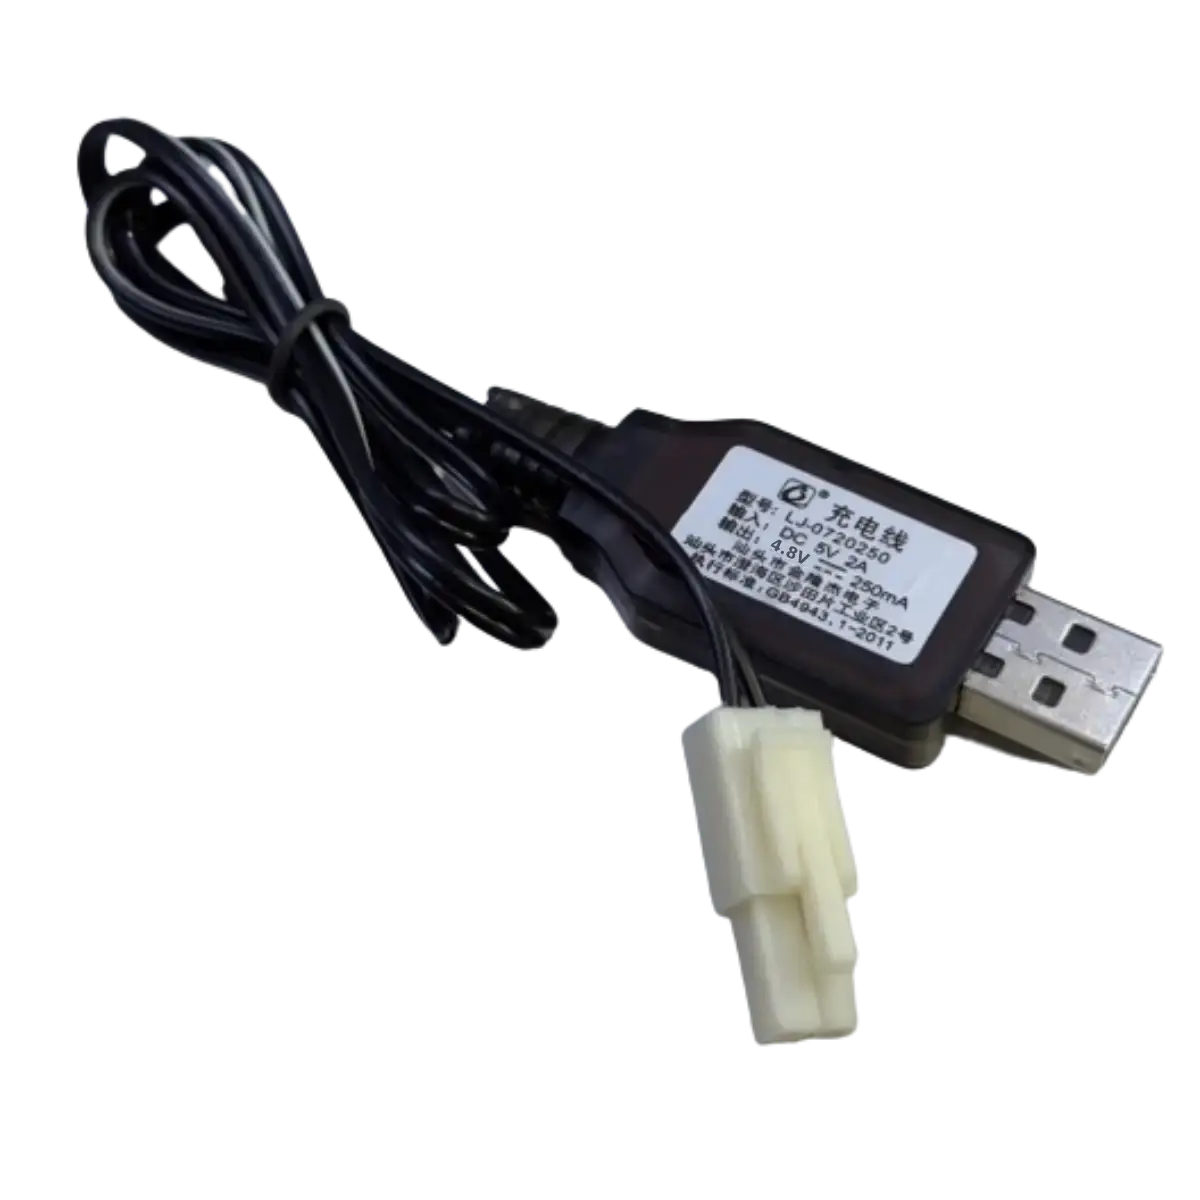 Chargeur USB 4.8V 250mA pour jouets radiocommandés, voitures etc..